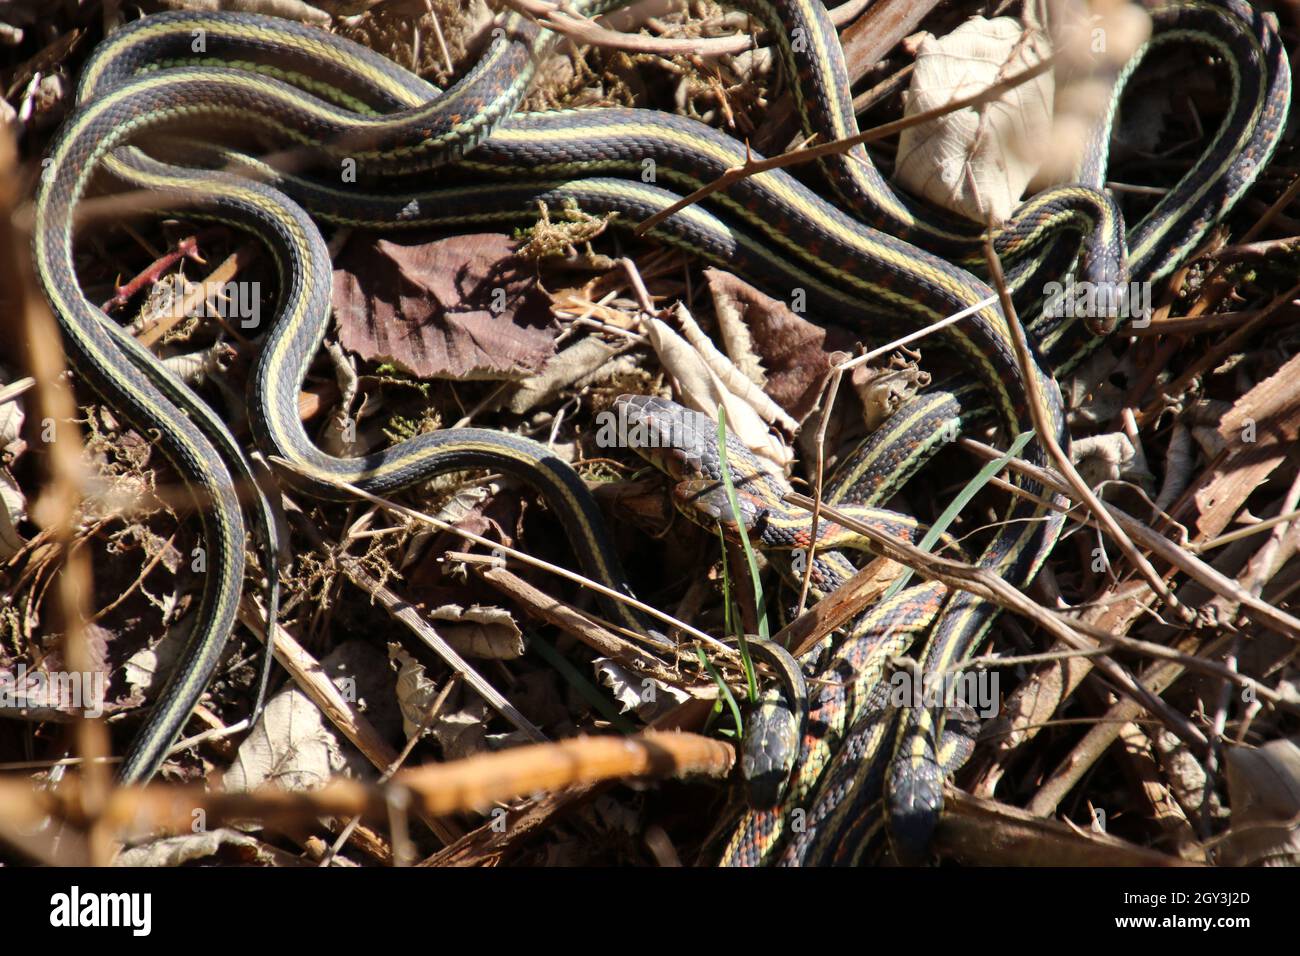 Un número de serpientes de guirnalda entrelazadas en algunas hojas y hierba muertas Foto de stock